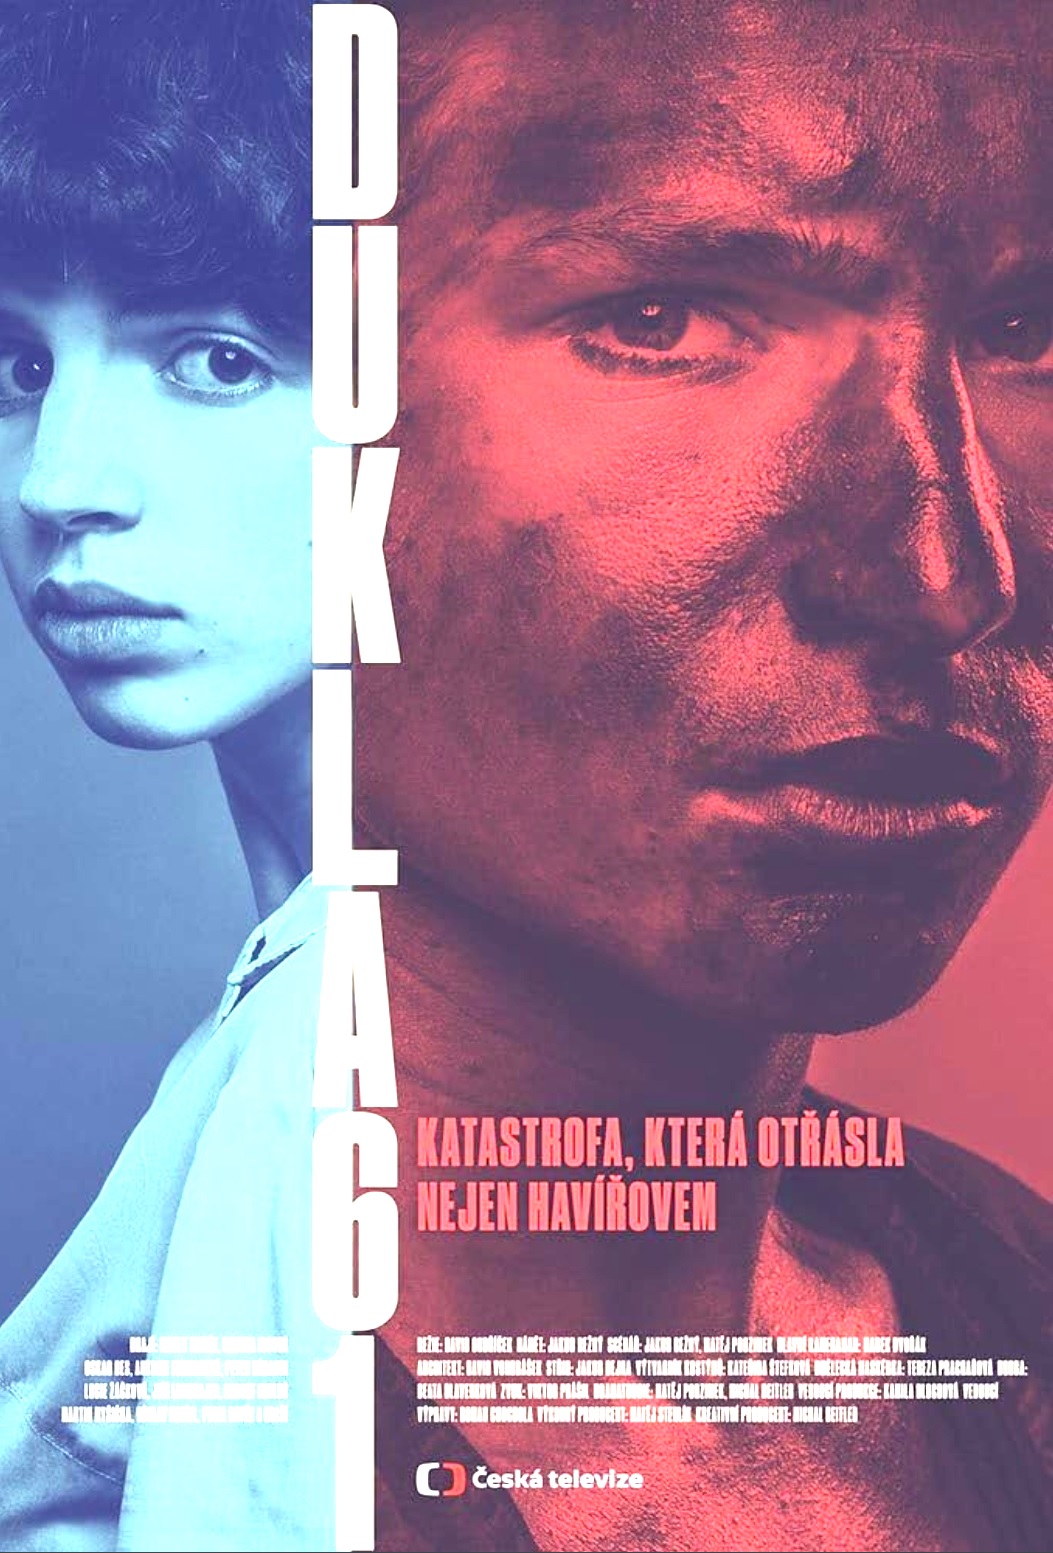 Plakát pro film “Dukla 61”